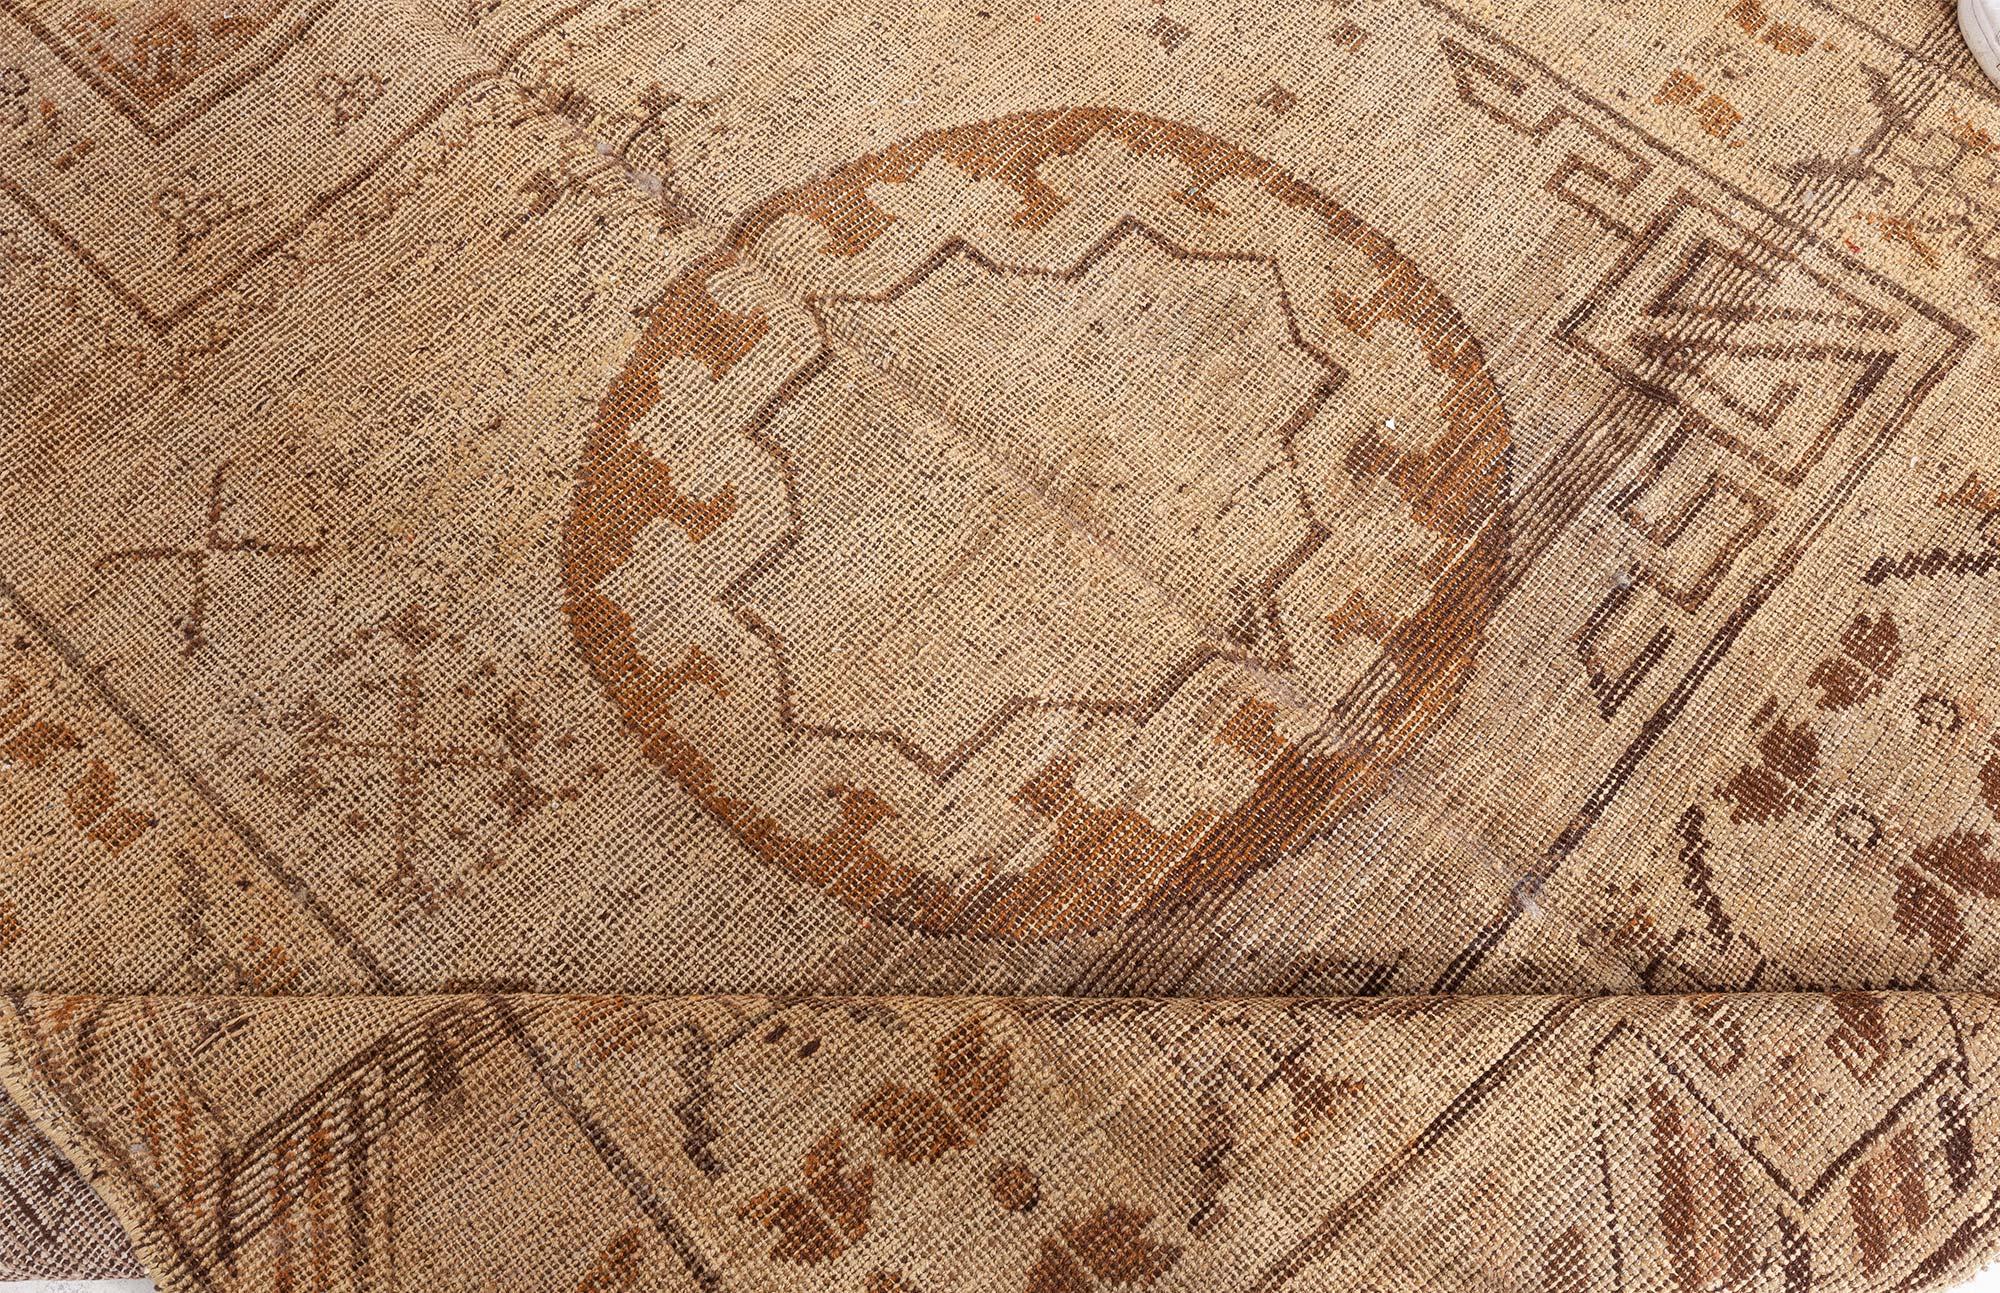 Samarkand-Teppich aus der Jahrhundertmitte, karamellfarben und braun, handgefertigt aus Wolle.
Größe: 6'3